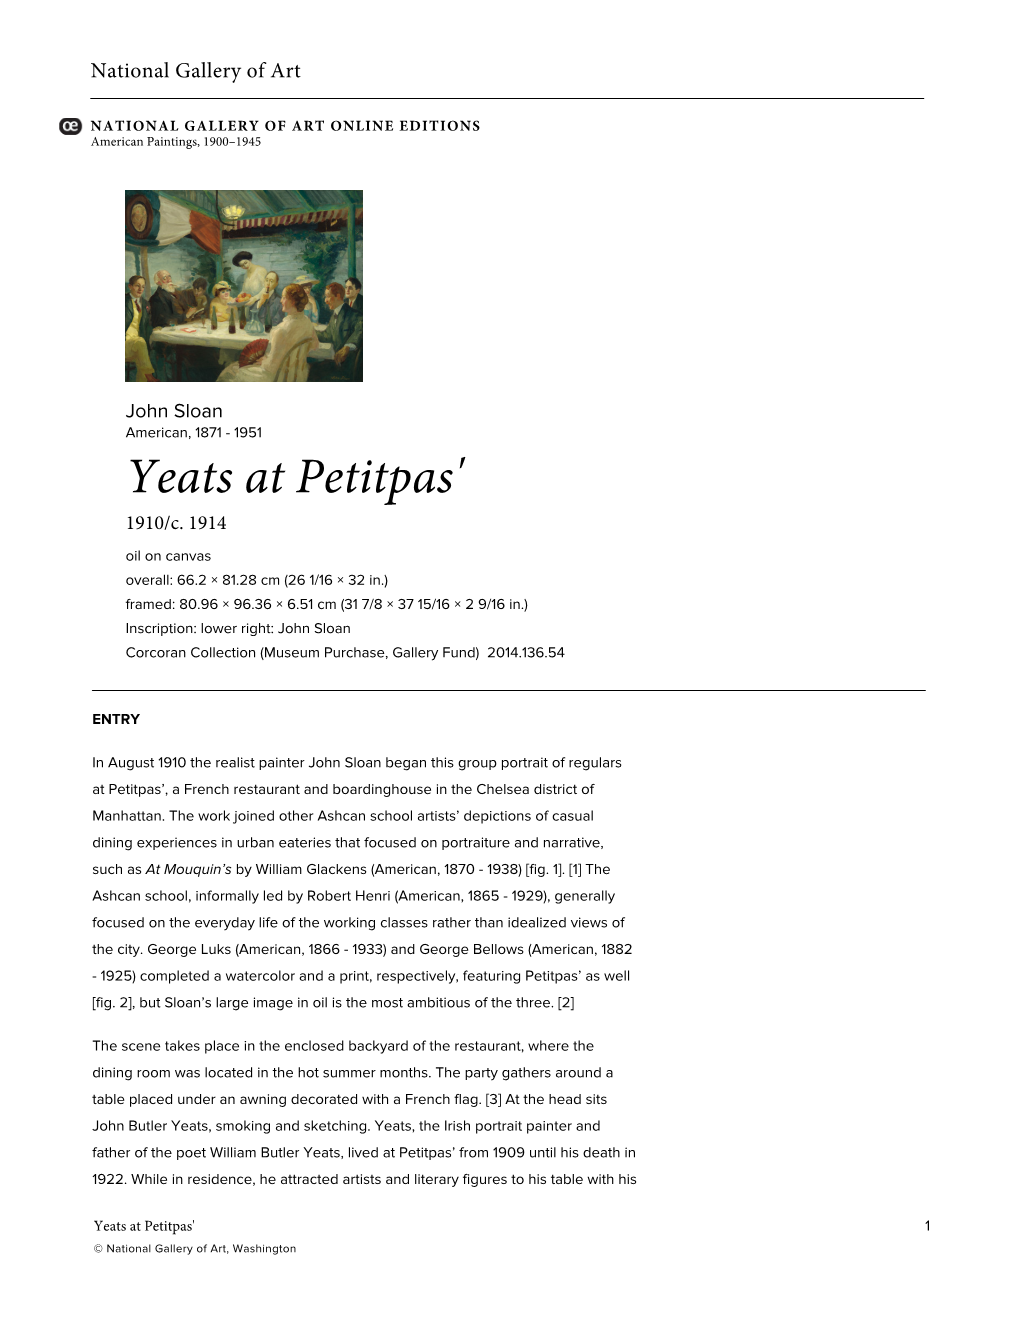 Yeats at Petitpas' 1910/C